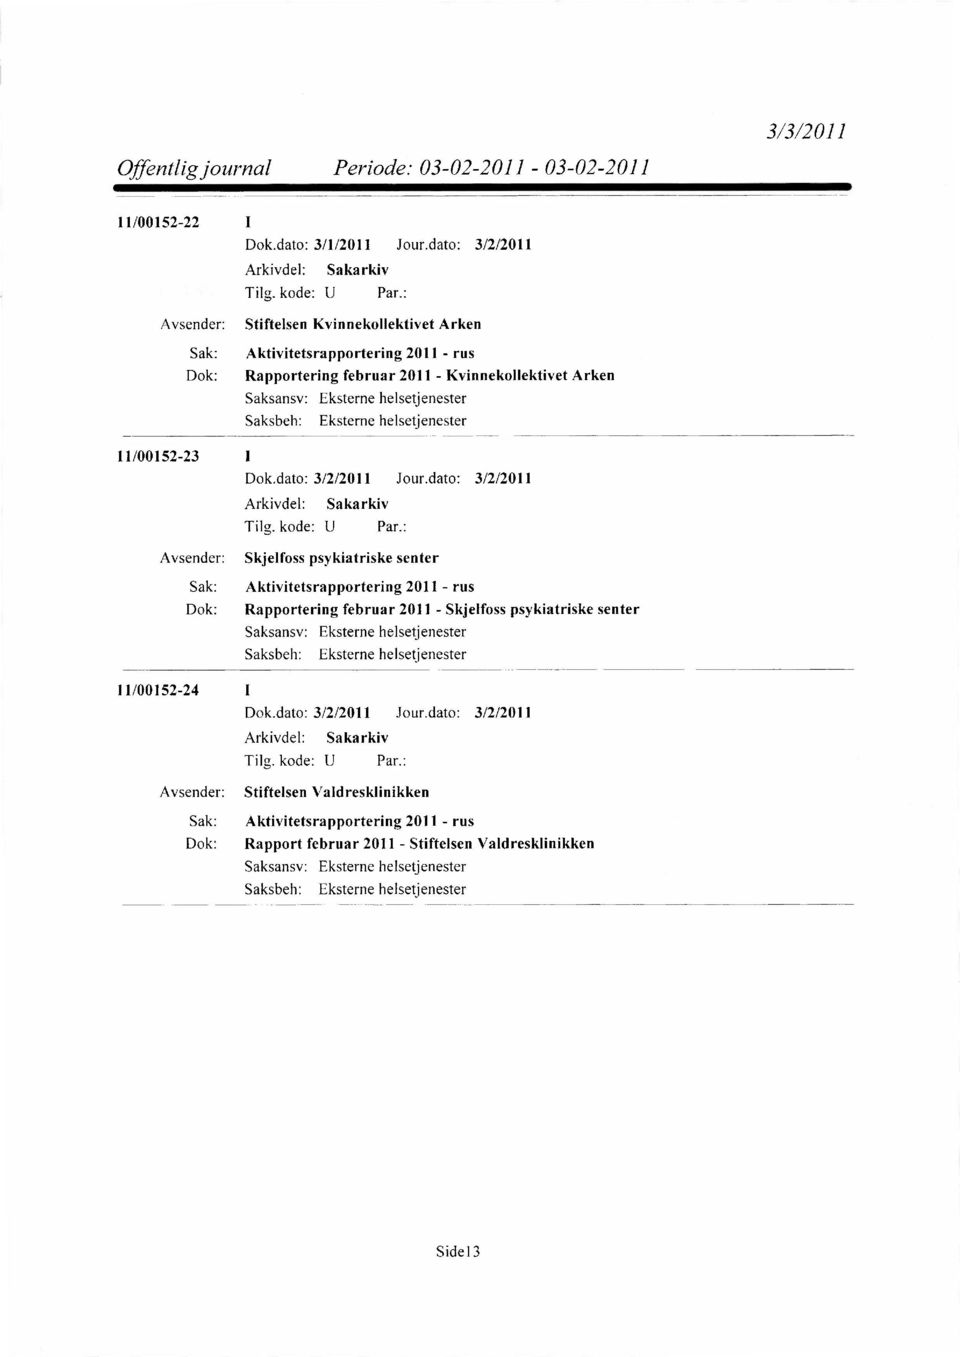 Aktivitetsrapportering 2011 - rus Dok: Rapportering februar 2011 - Skjelfoss psykiatriske senter 11/00152-24 1